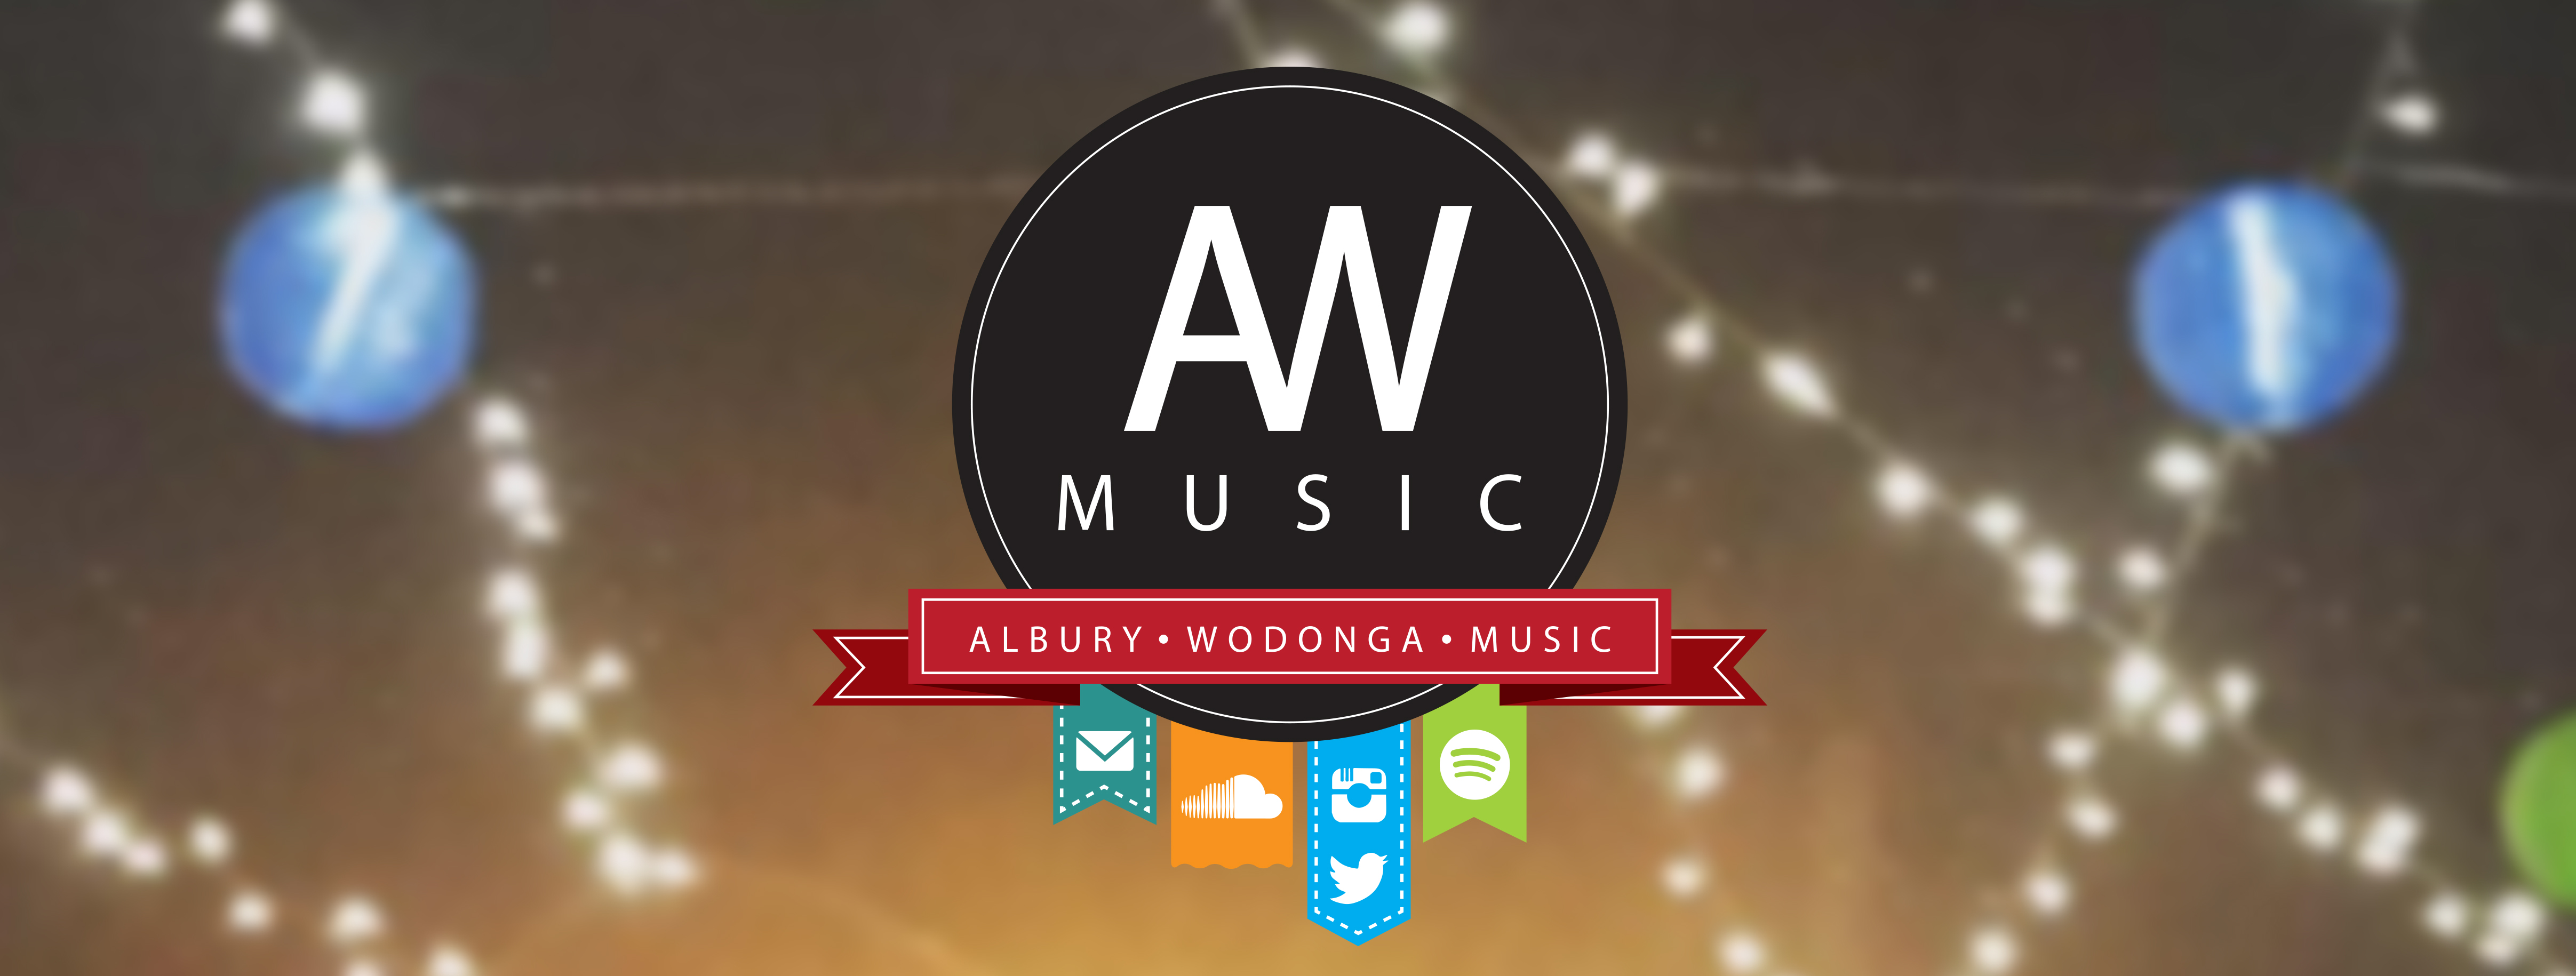 ALBURY / WODONGA MUSIC: NEWS